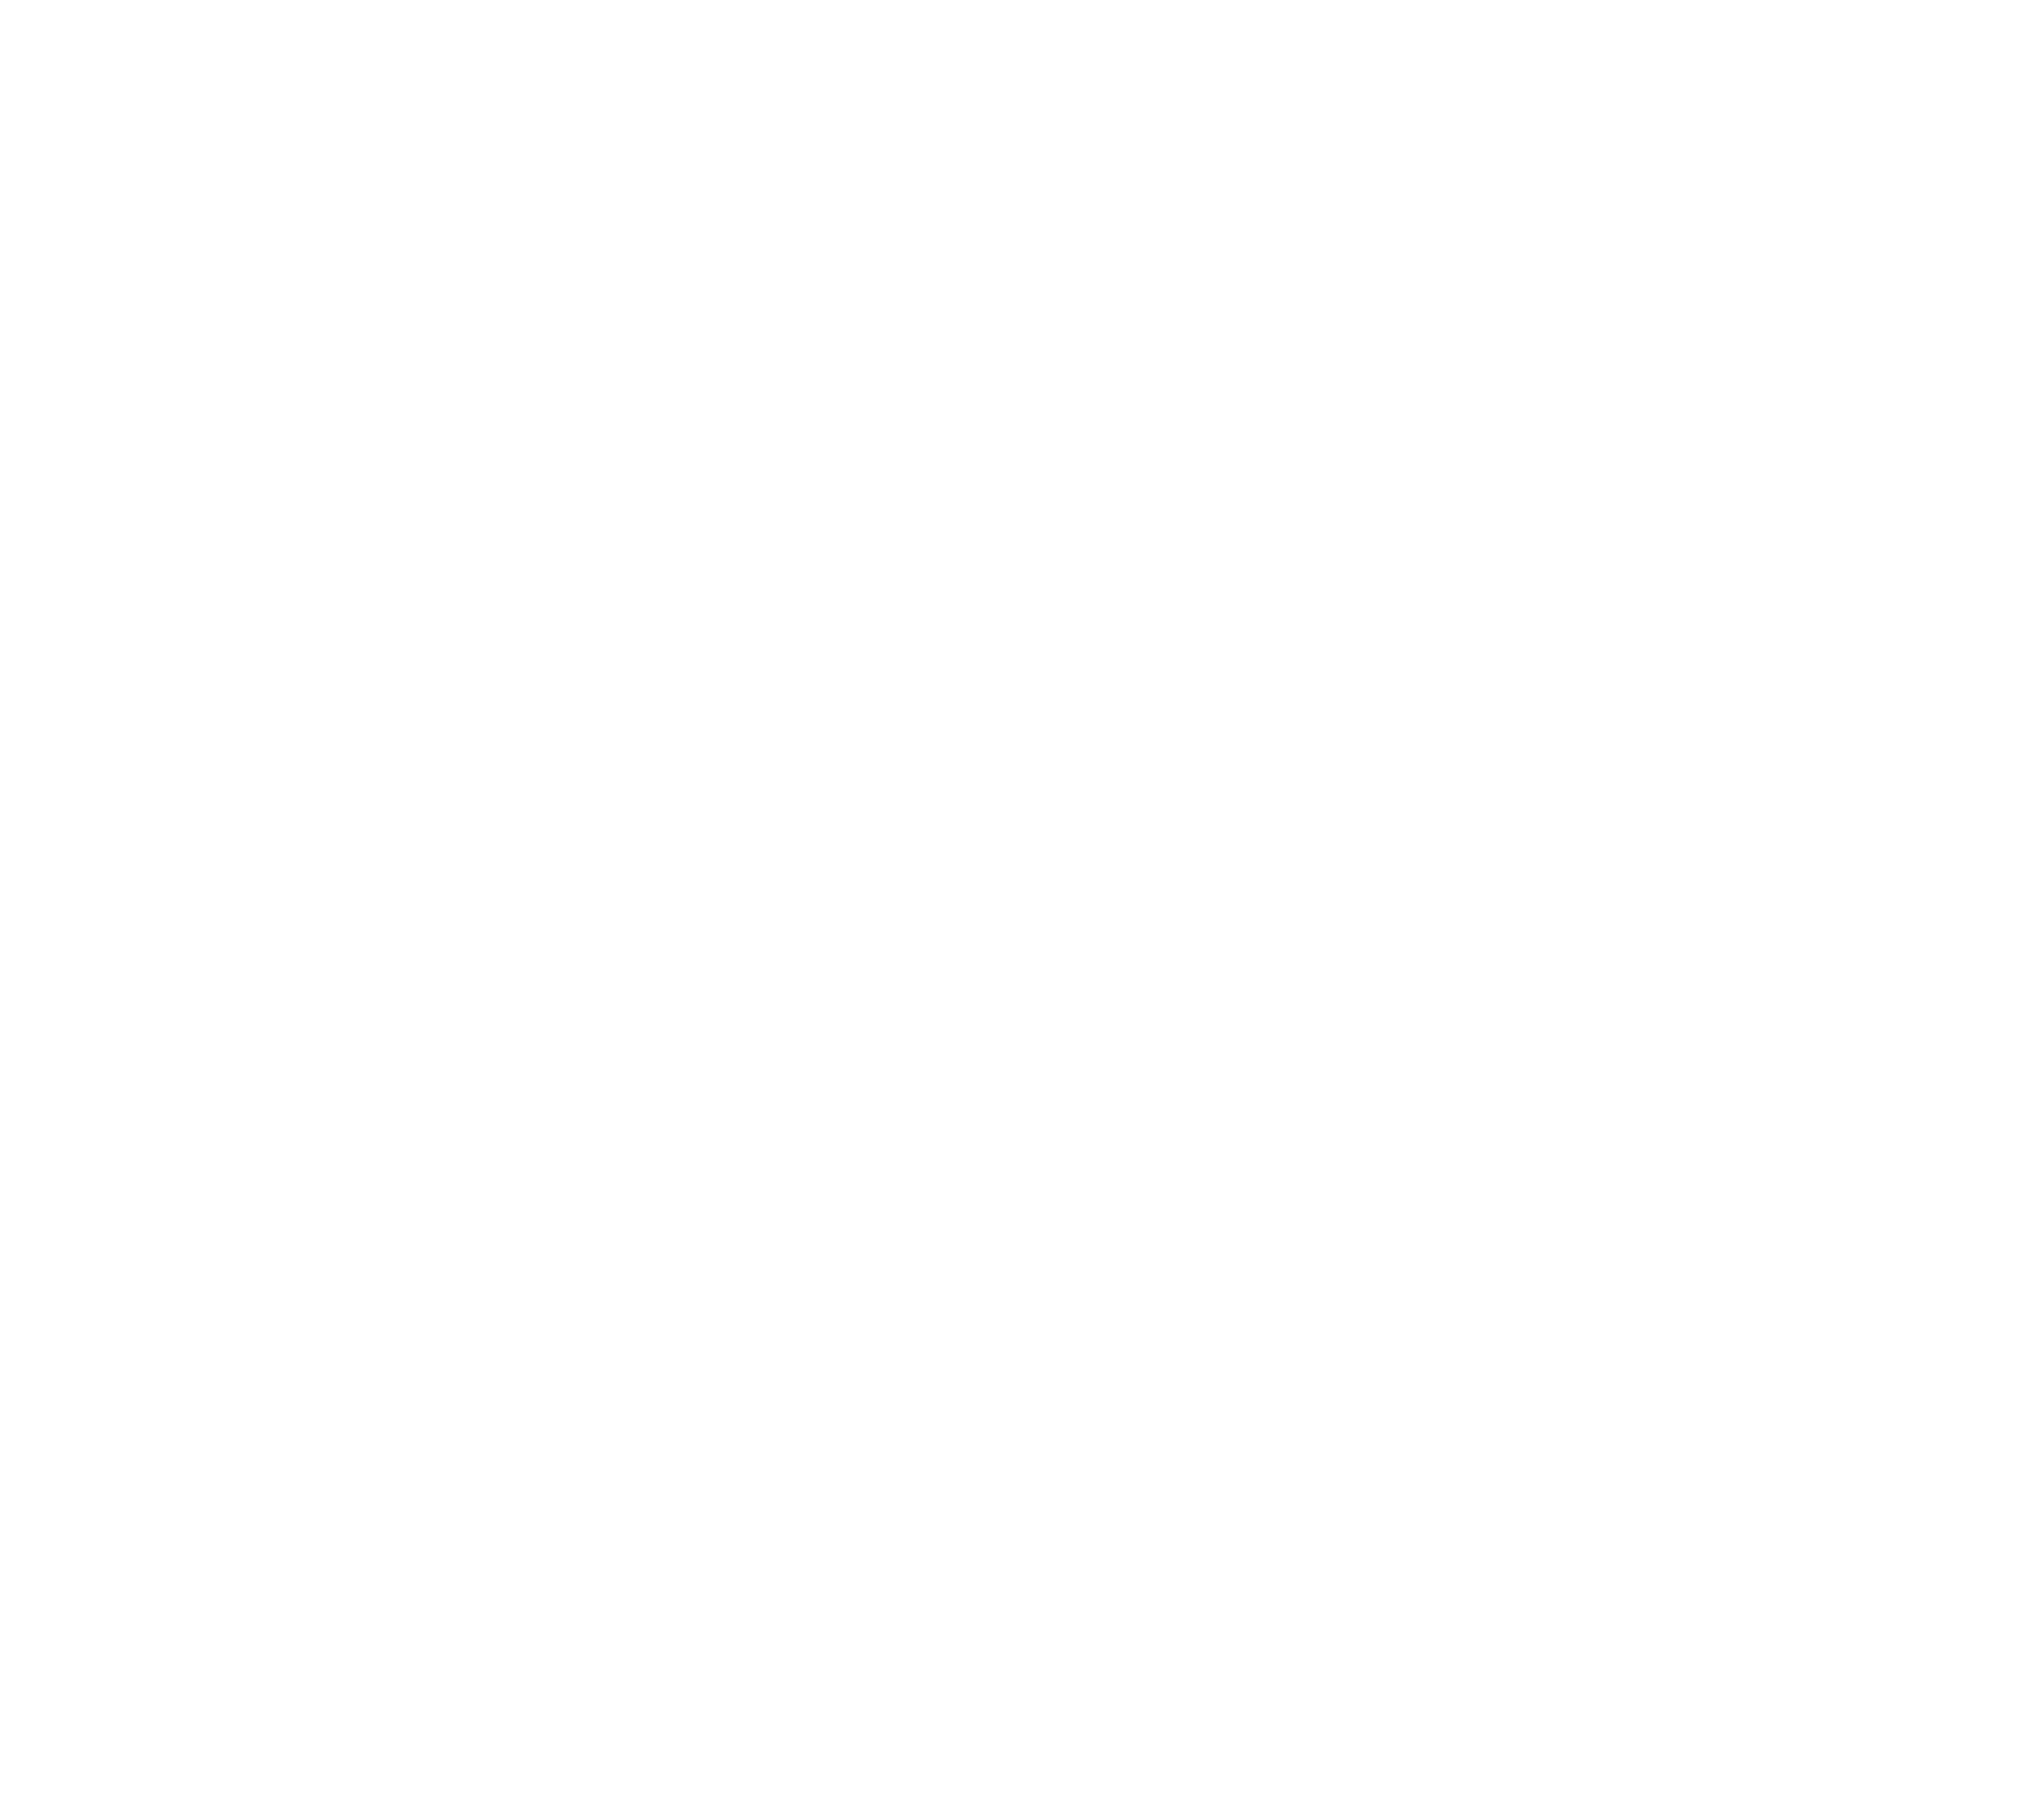 Florin_Utrecht.png